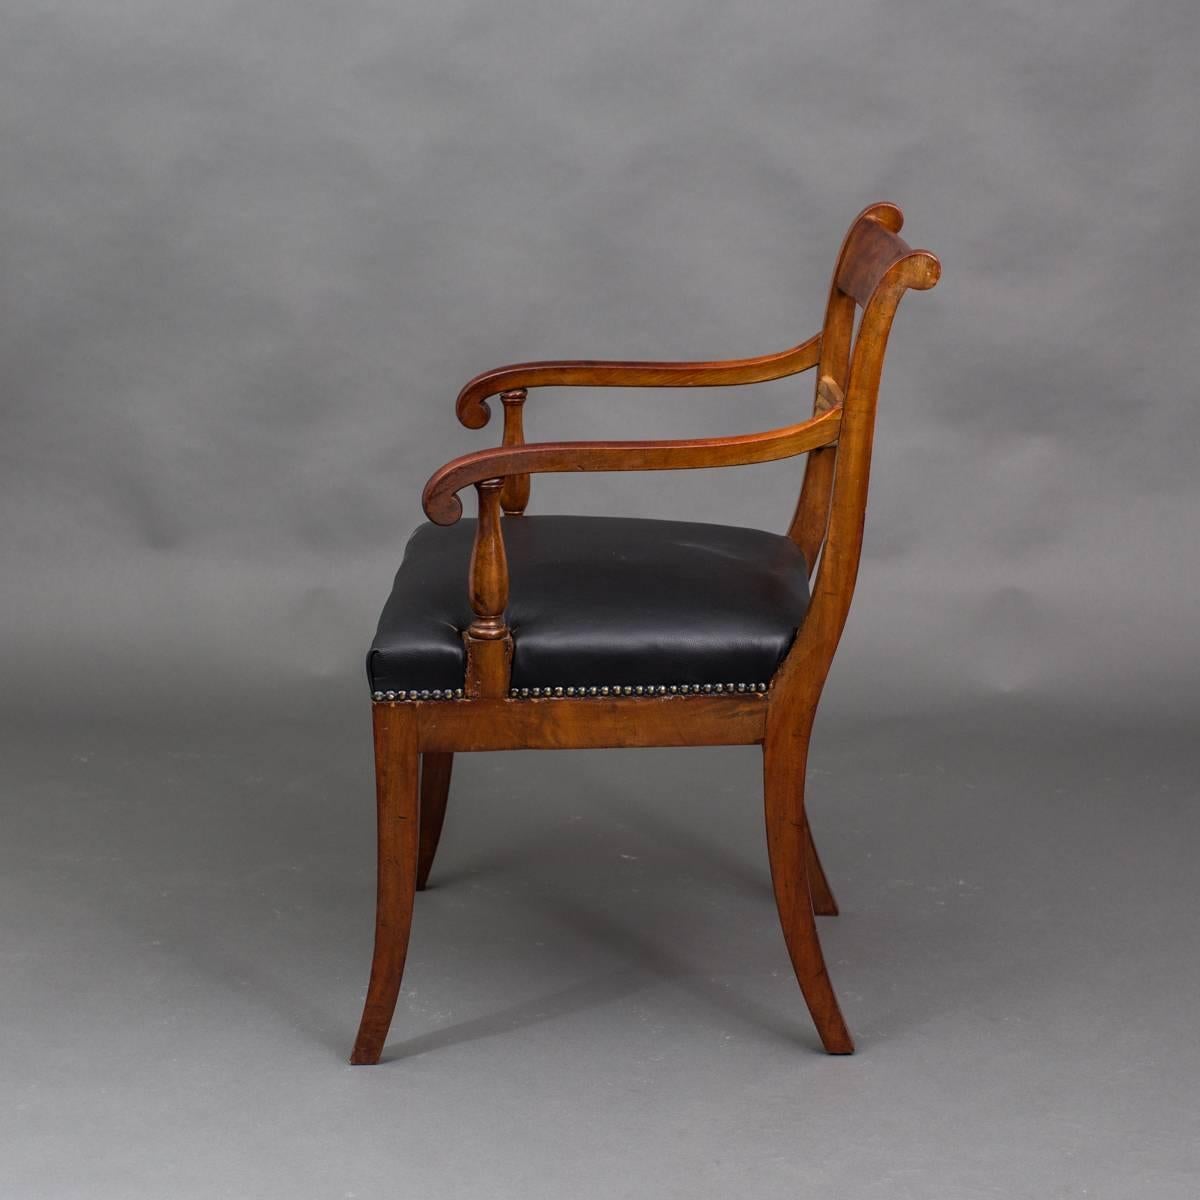 Fauteuils anglais Set of Four 19ème siècle Angleterre. Un ensemble de 4 fauteuils fabriqués en Angleterre pendant la période Regency 19ème siècle. Cadre en acajou avec des détails dorés. Tapissé d'un cuir noir. Restauré. Disponible à l'achat